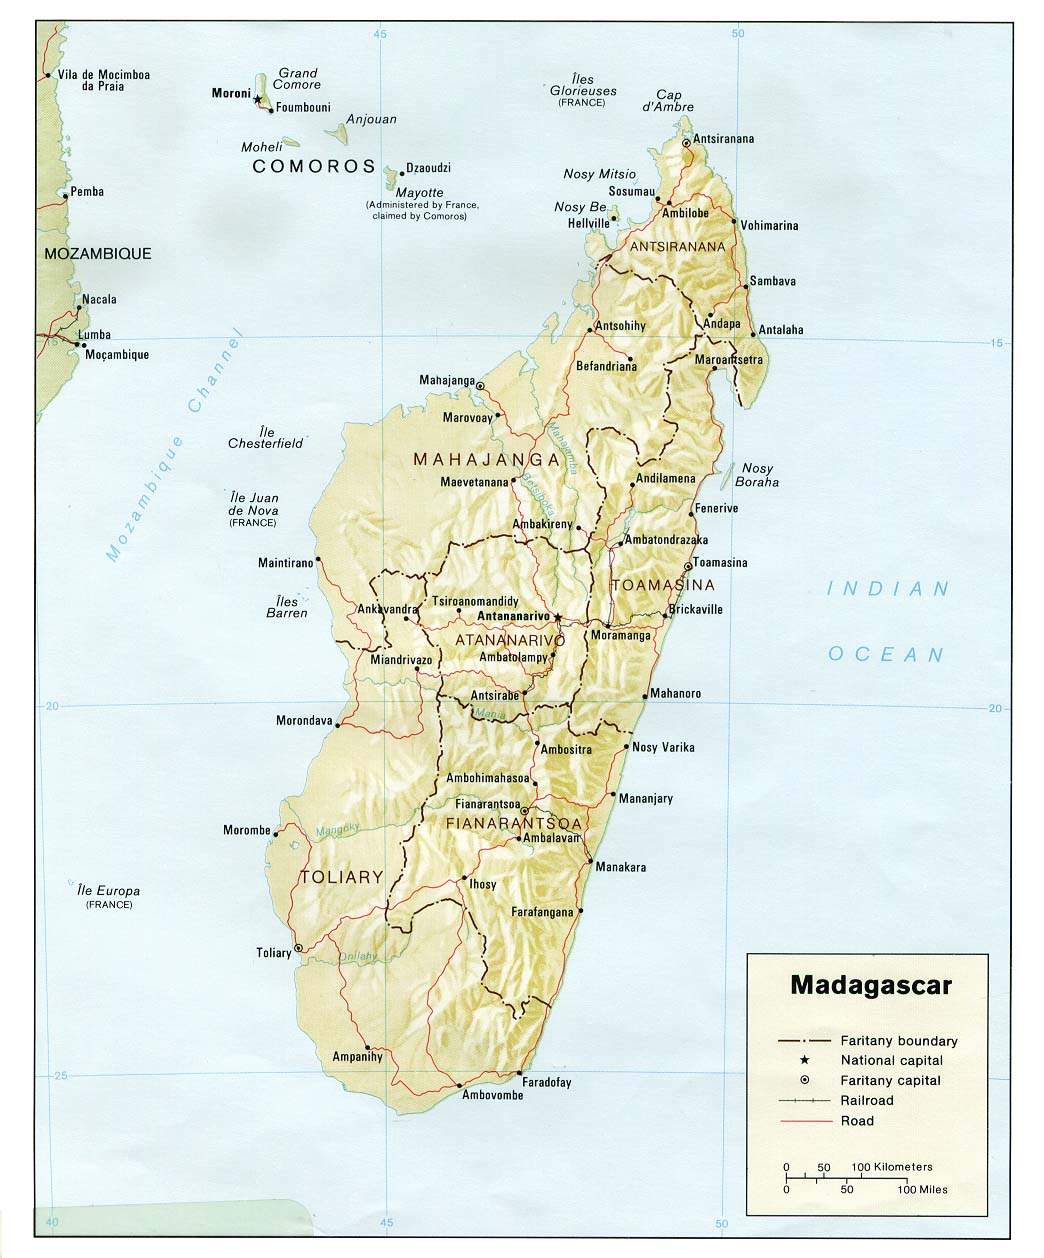 Mapa físico y político de Madagascar (1981)